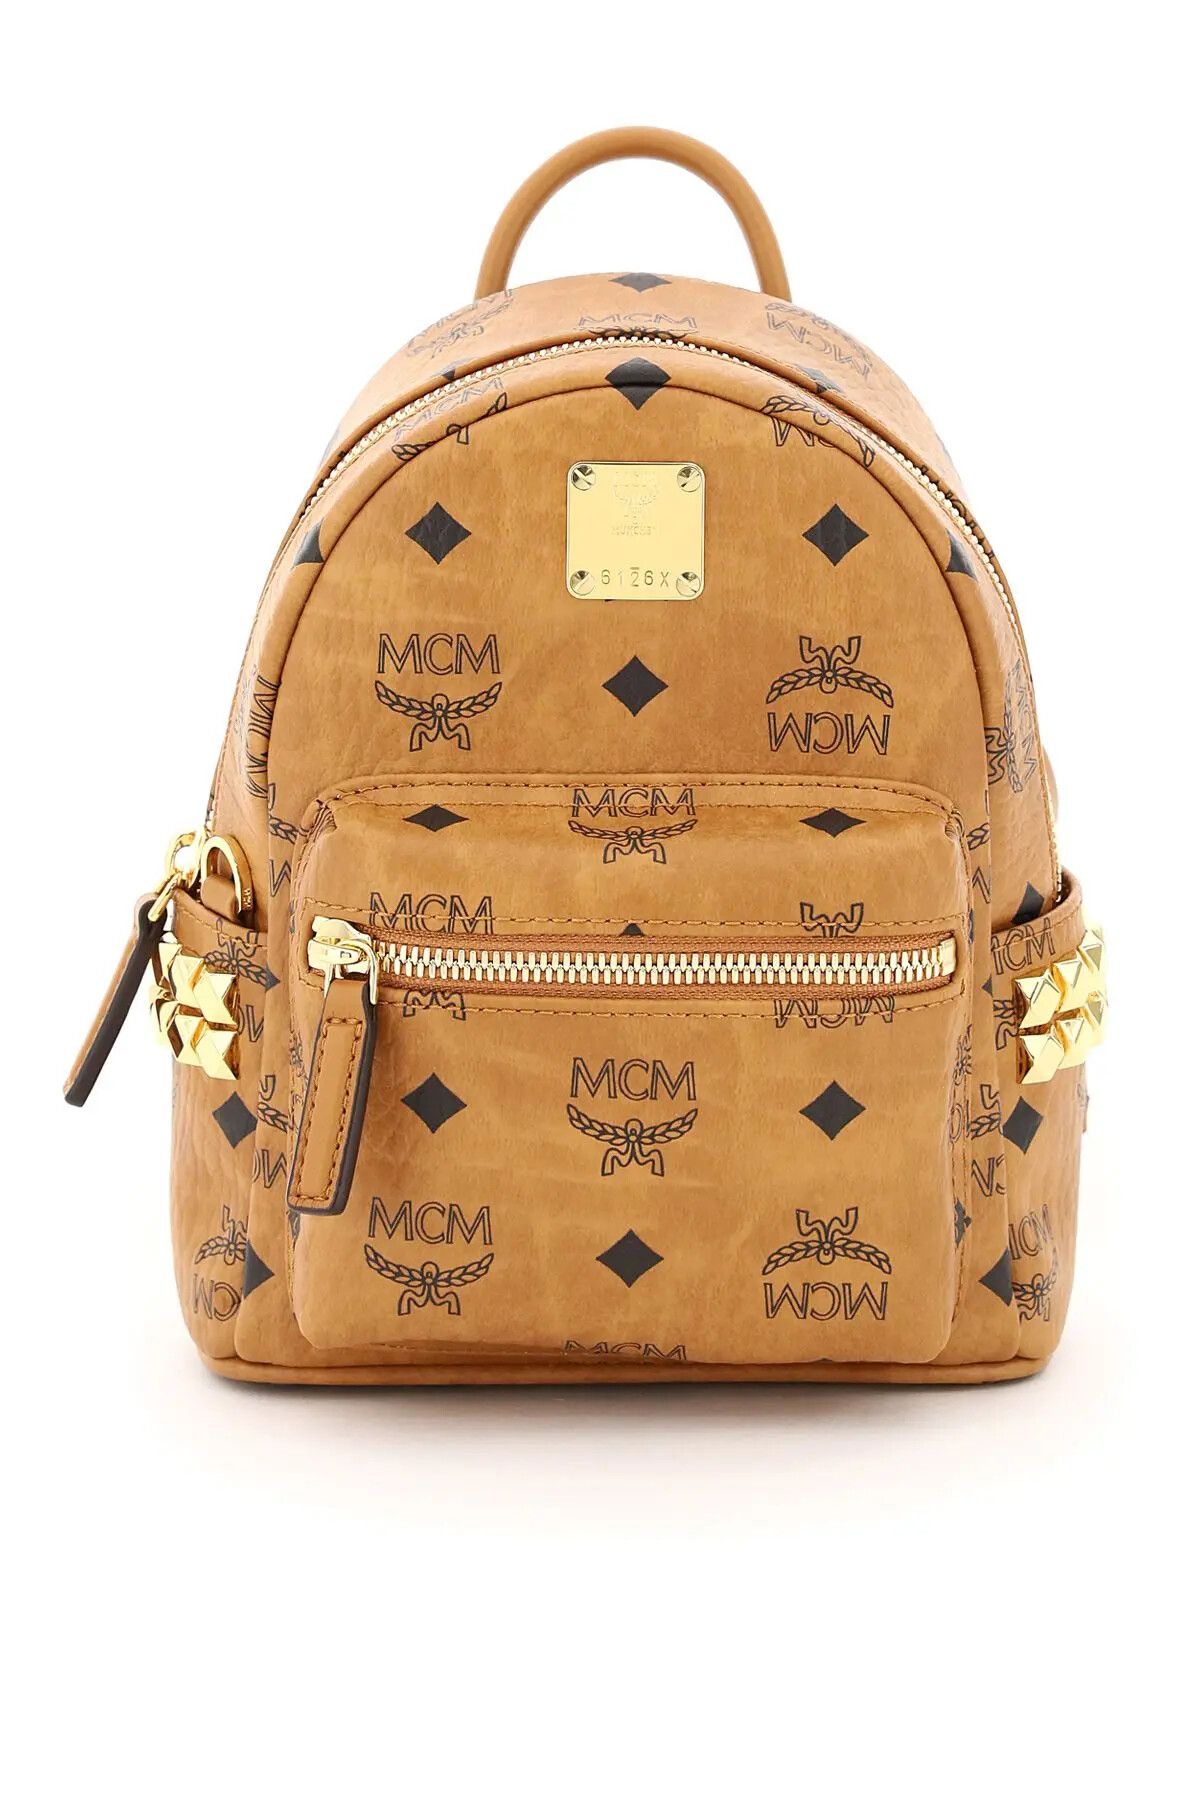 MCM Mcm Backpack, Grailed